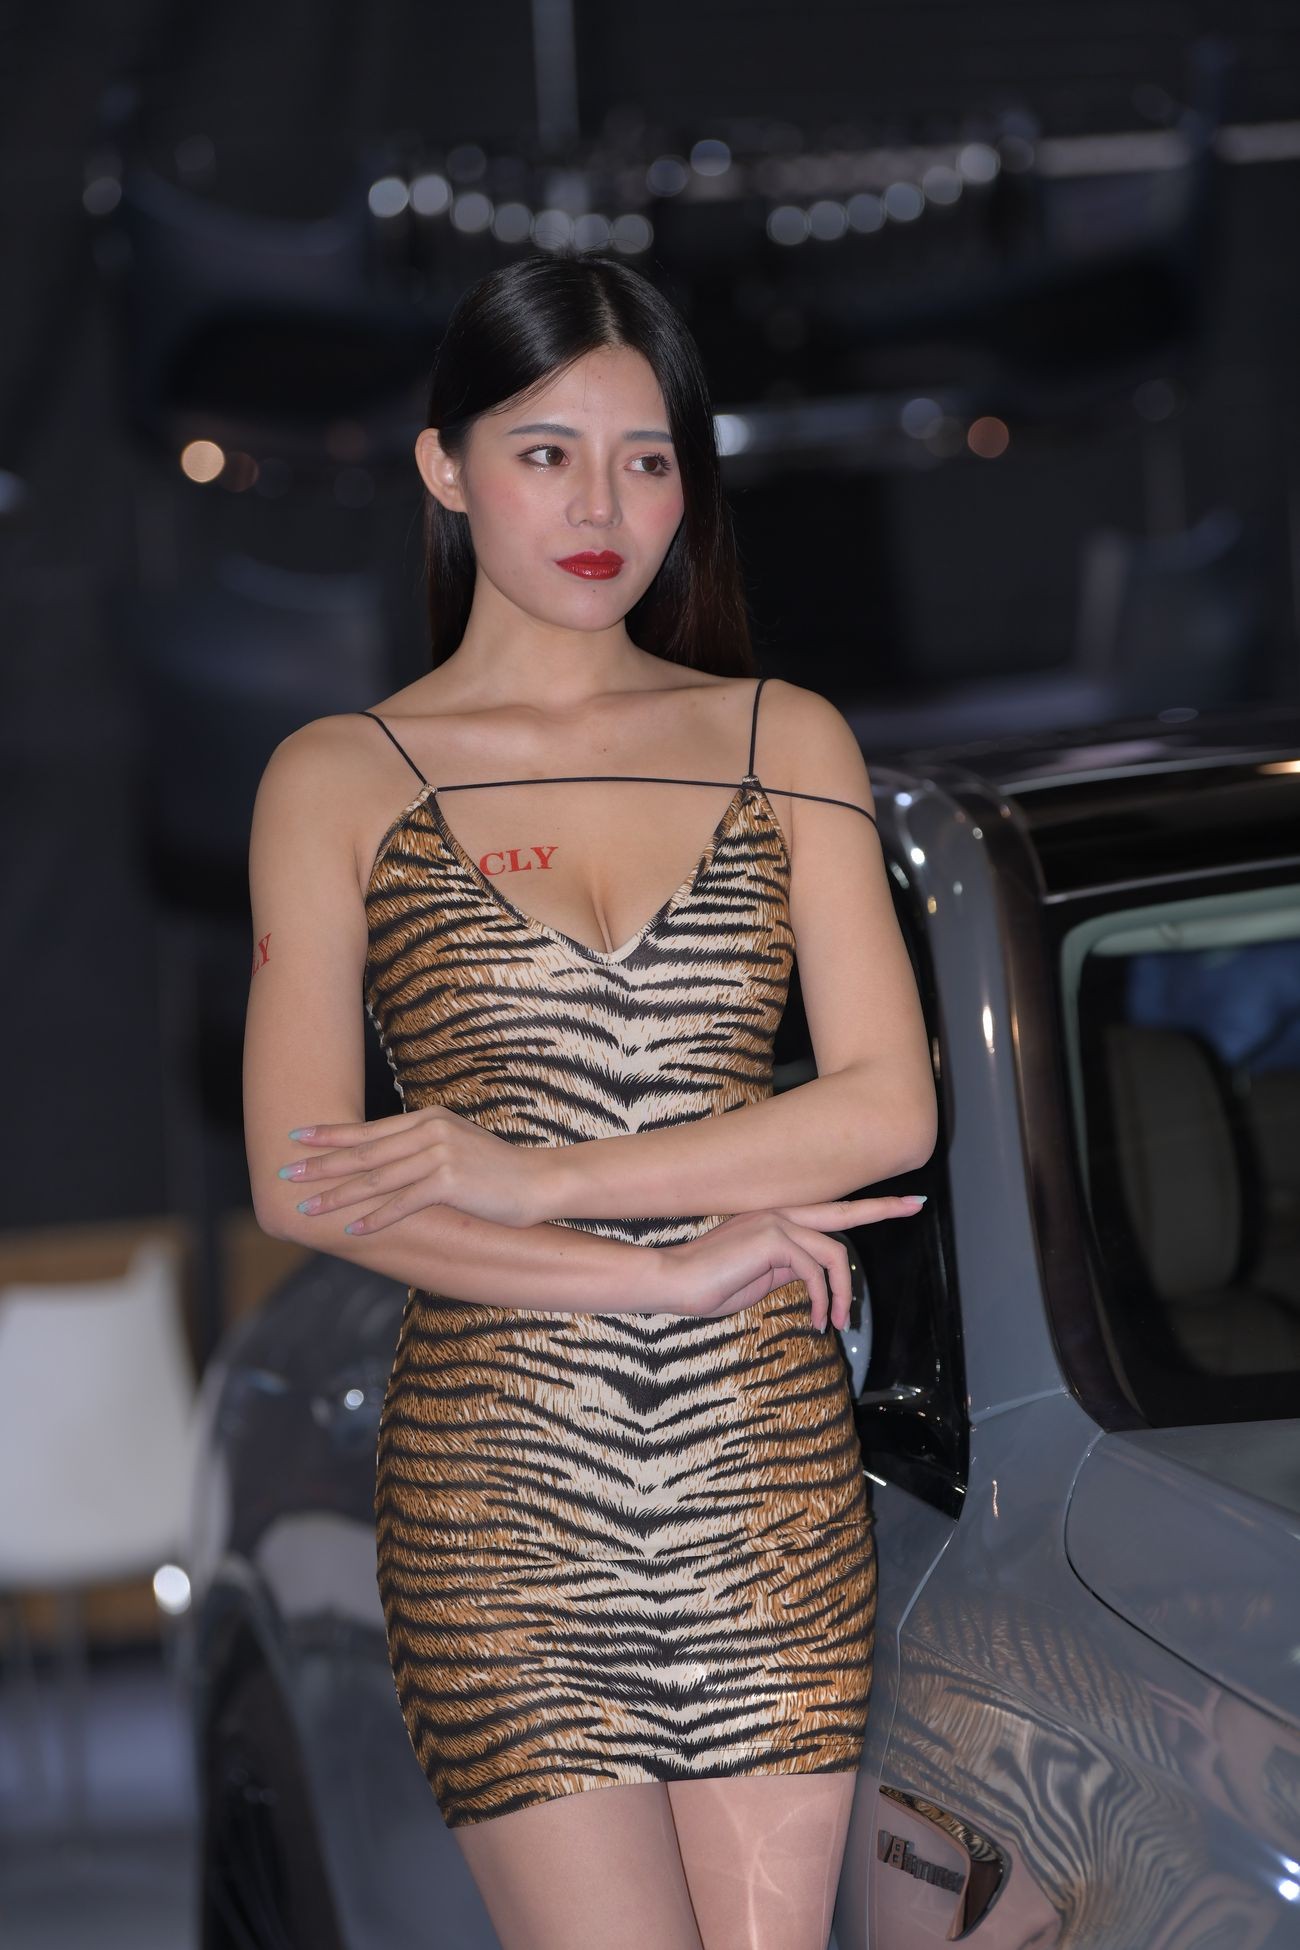 视觉冲击街拍作品性感的豹纹吊带裙美女 (25)